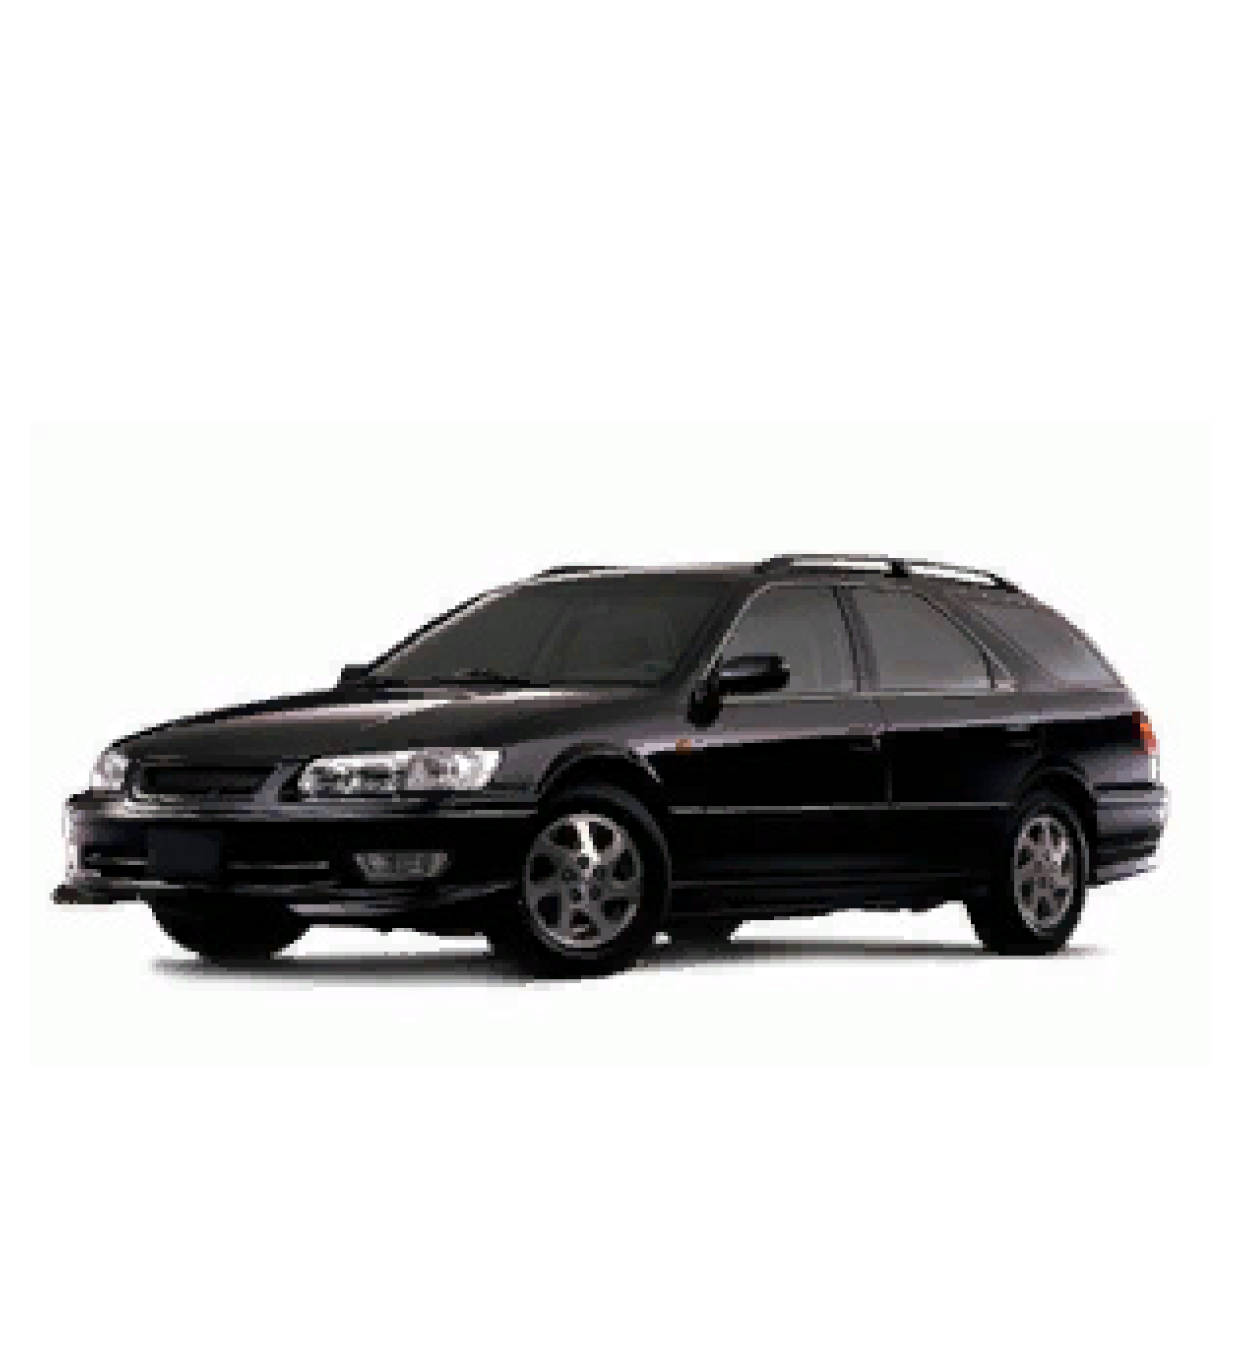 Toyota Camry Gracia 1997 2.0